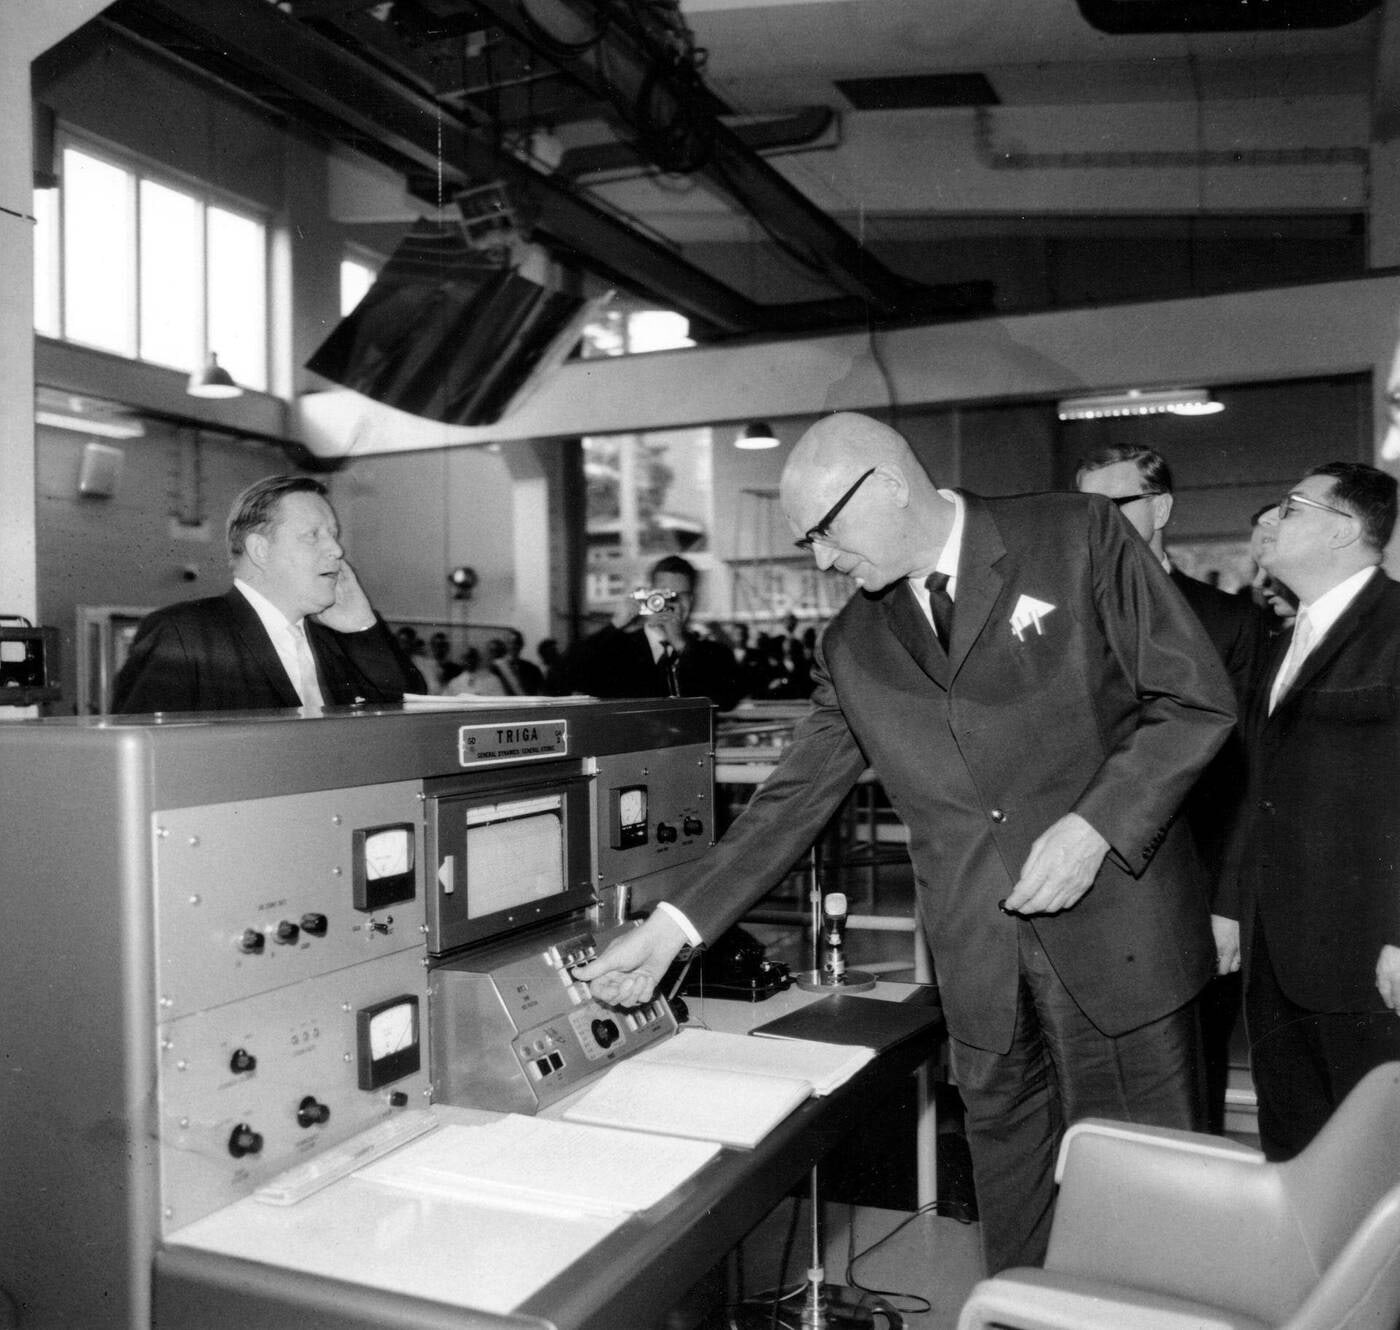 President Urho Kekkonen FiR-$1$ reaktorit käivitamas aastal 1962. Allikas: Aarre Ekholm / Lehtikuva